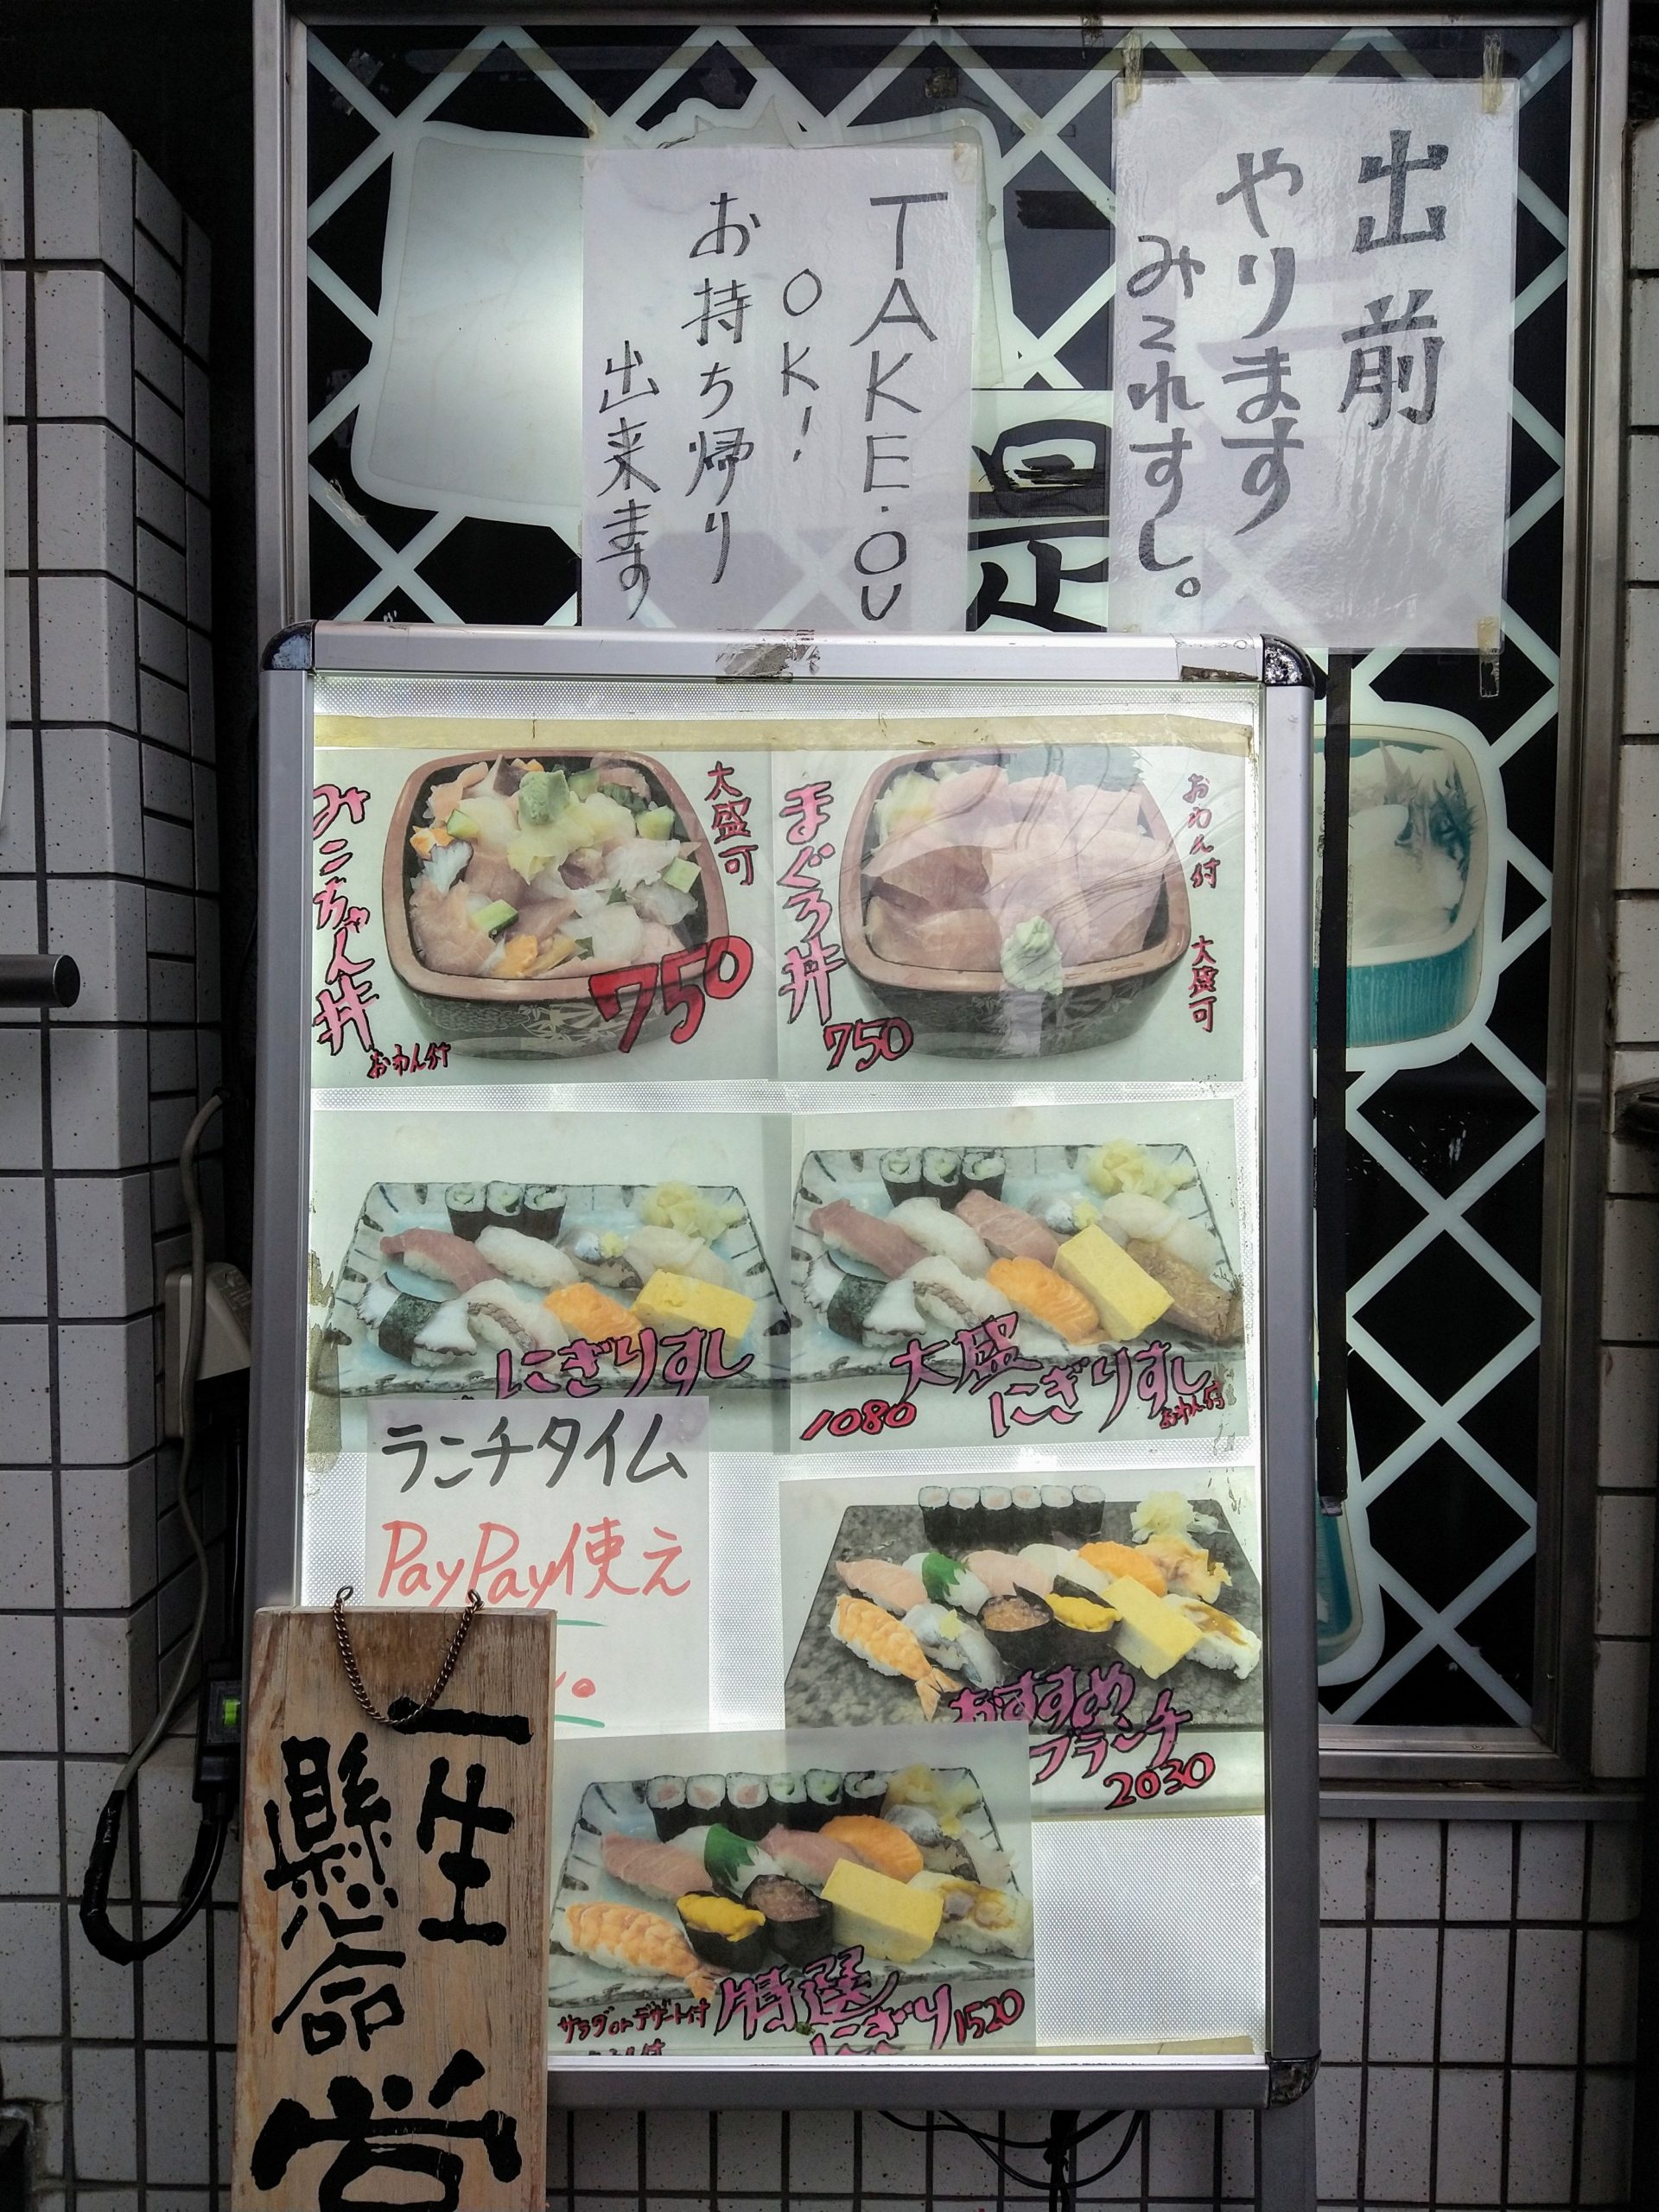 mikore-sushi-menu-01